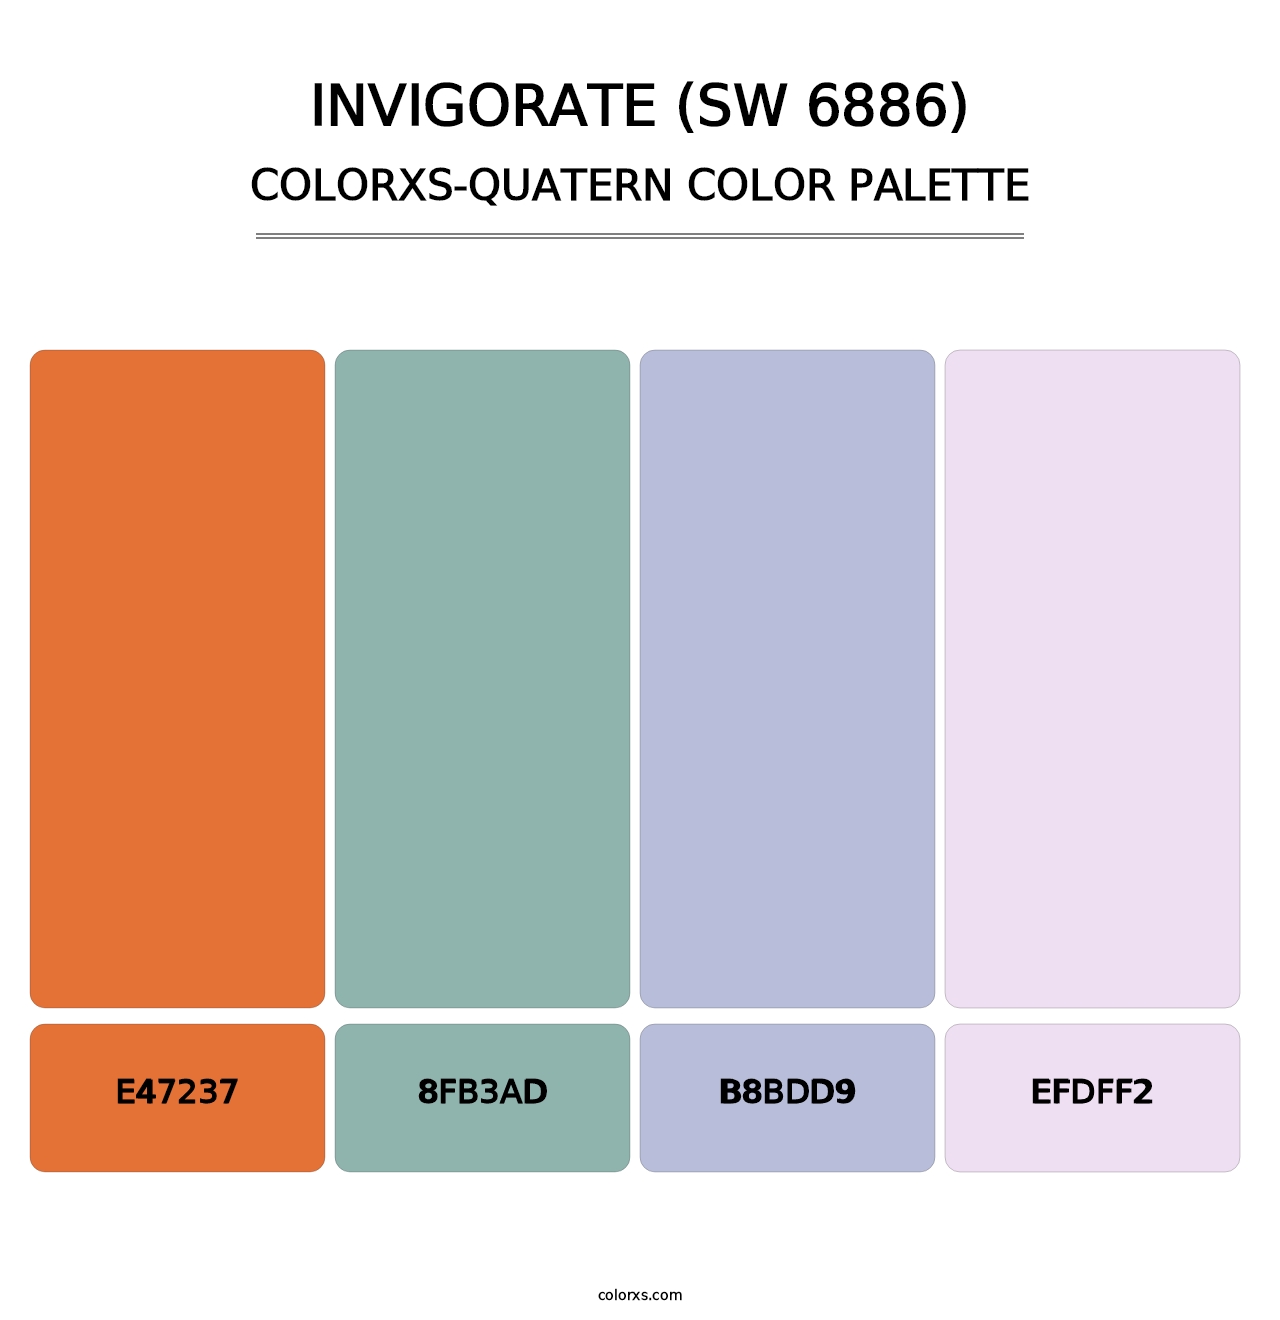 Invigorate (SW 6886) - Colorxs Quatern Palette